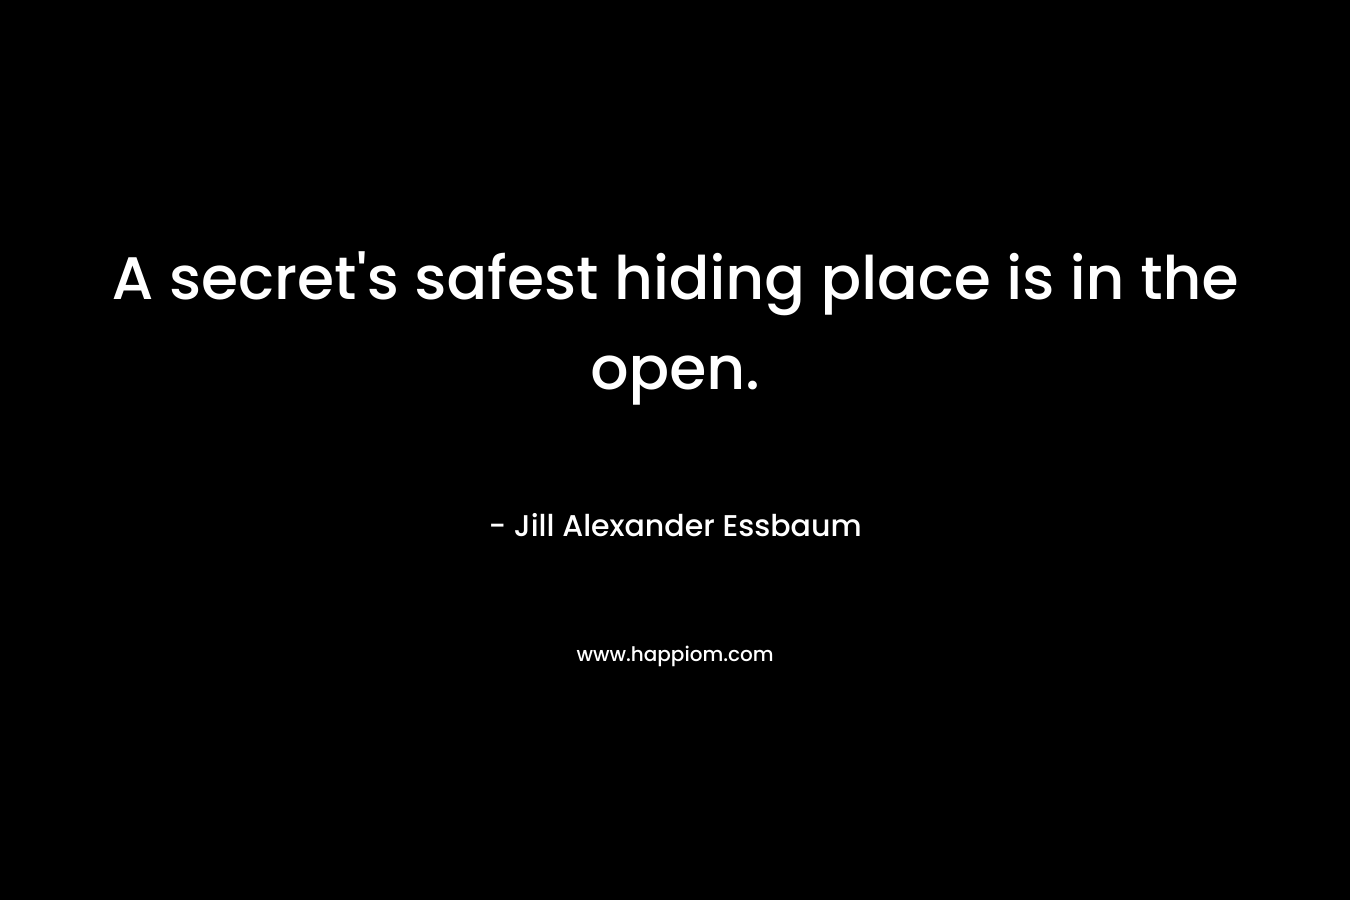 A secret's safest hiding place is in the open.